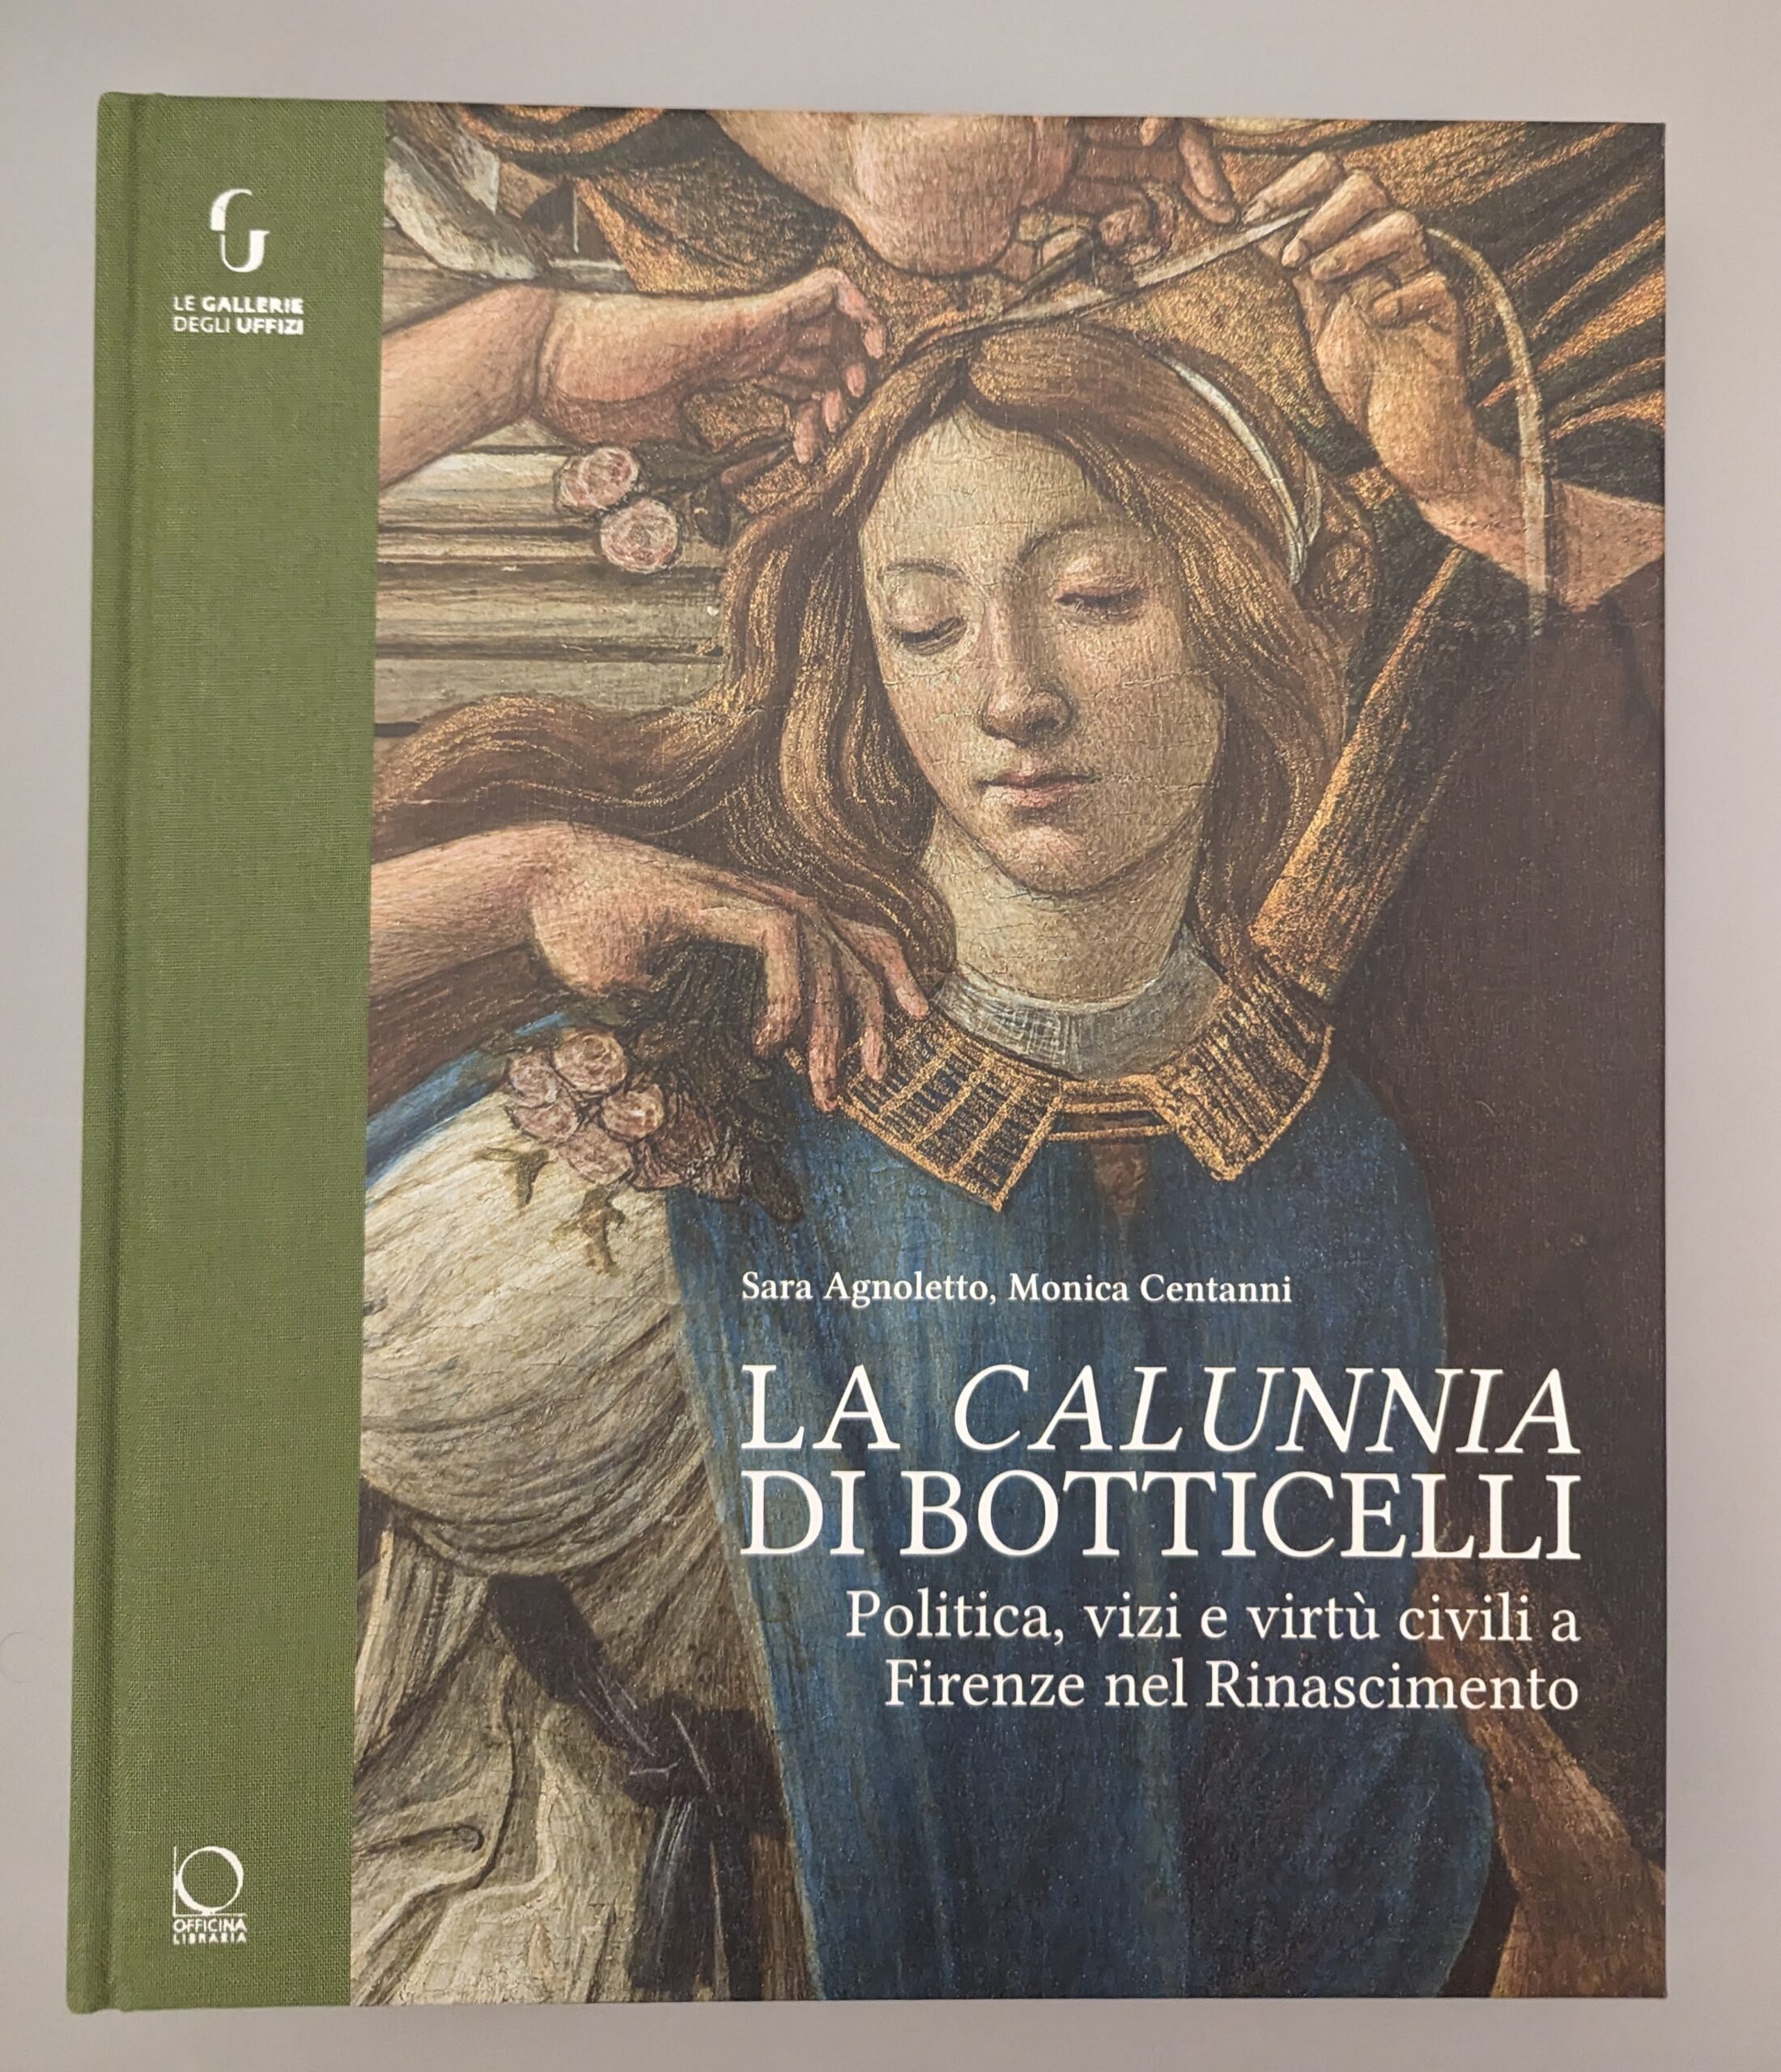 La Calunnia di Sandro Botticelli. Politica, vizi e virtù civili a Firenze nel Rinascimento